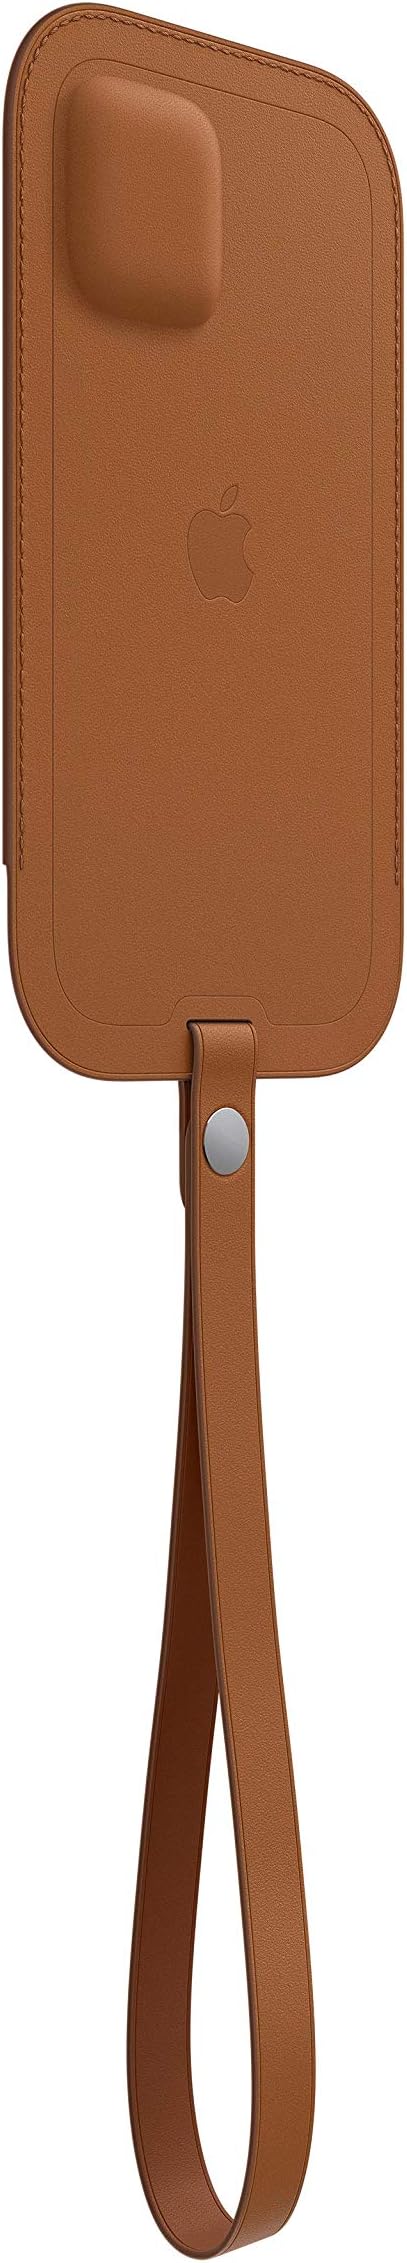 Apple iPhone 12 Mini Leather Sleeve Saddle Brown